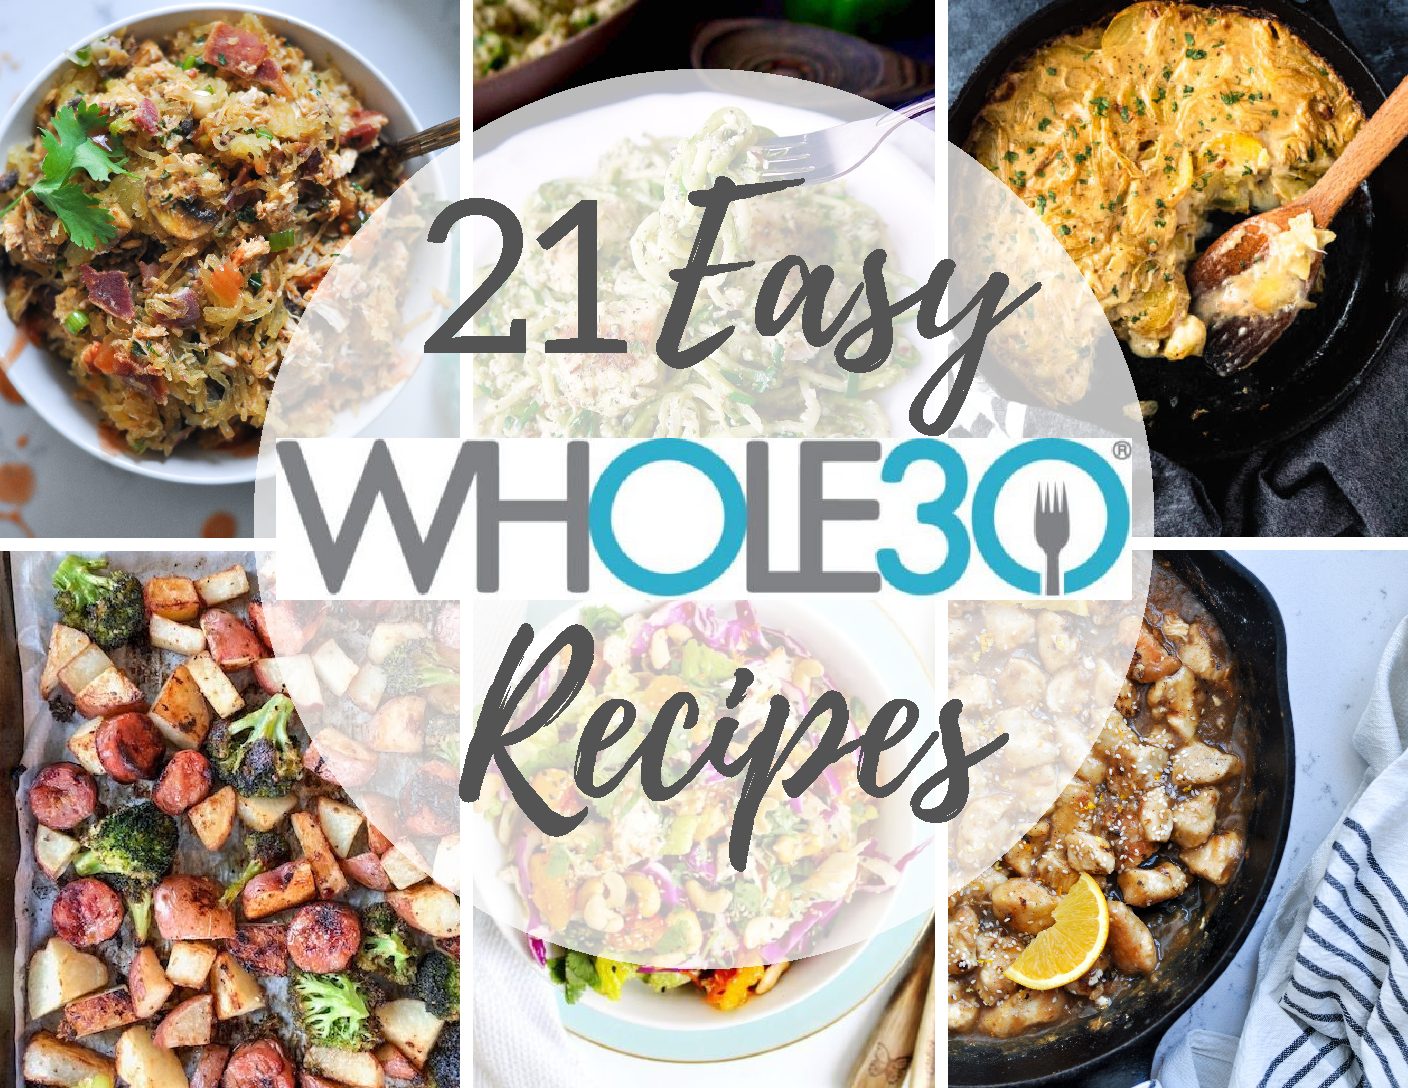 21 Easy Whole30 Recipes